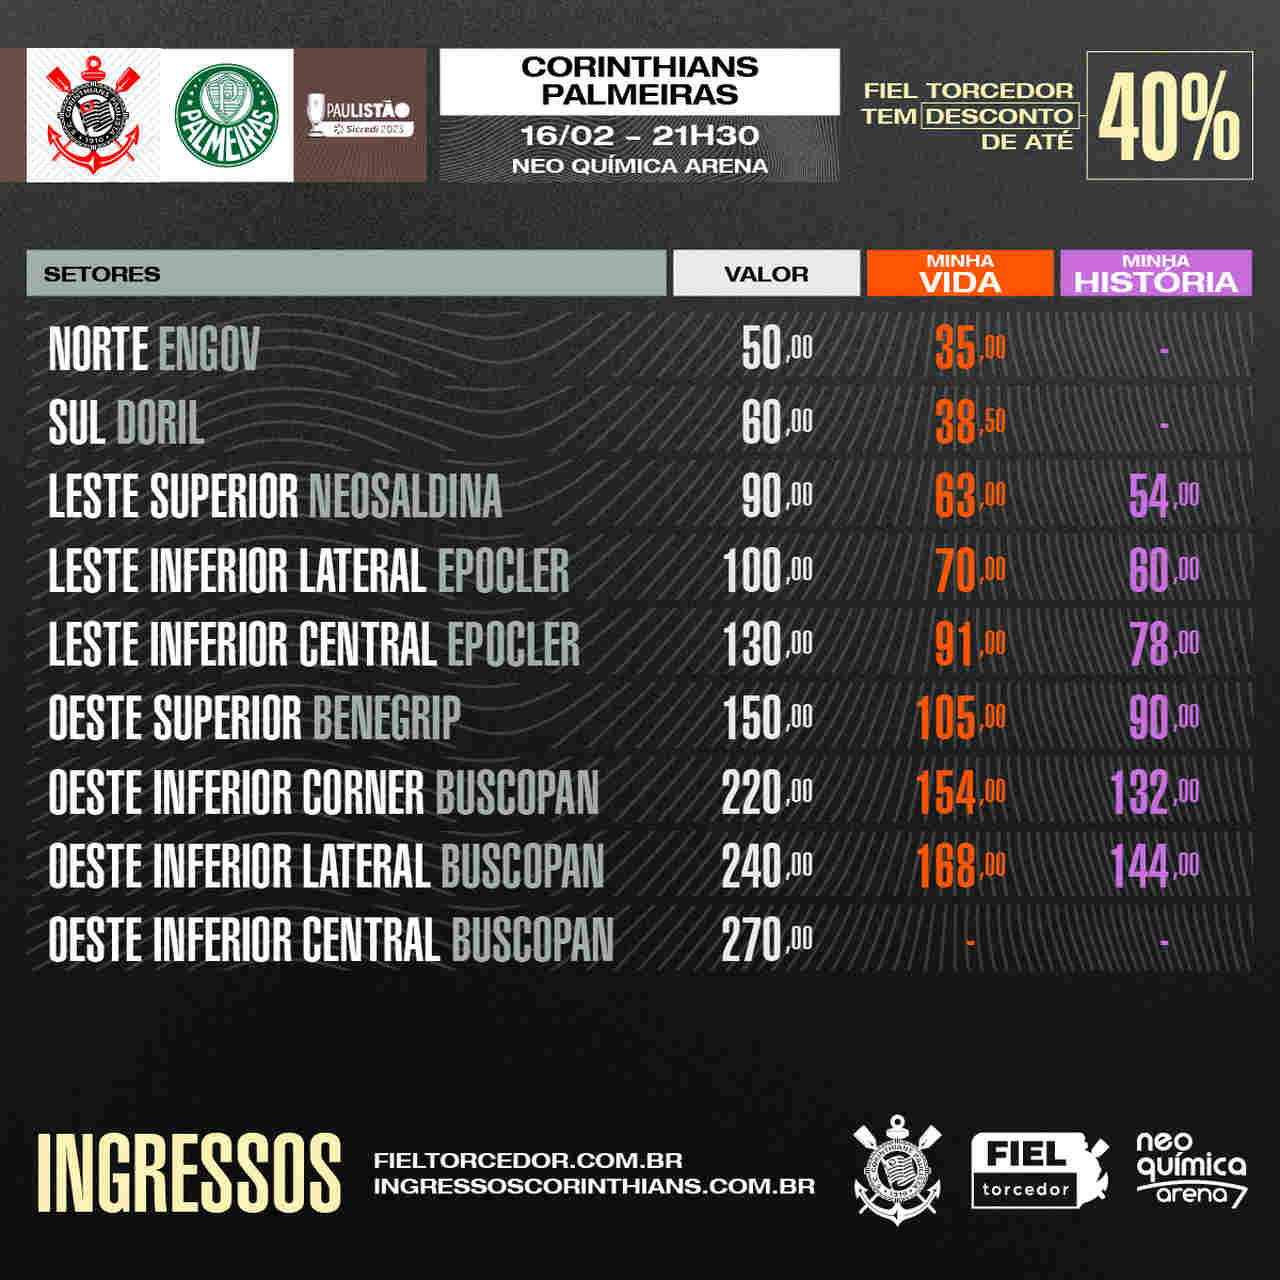 Preços Ingressos - Corinthians x Palmeiras